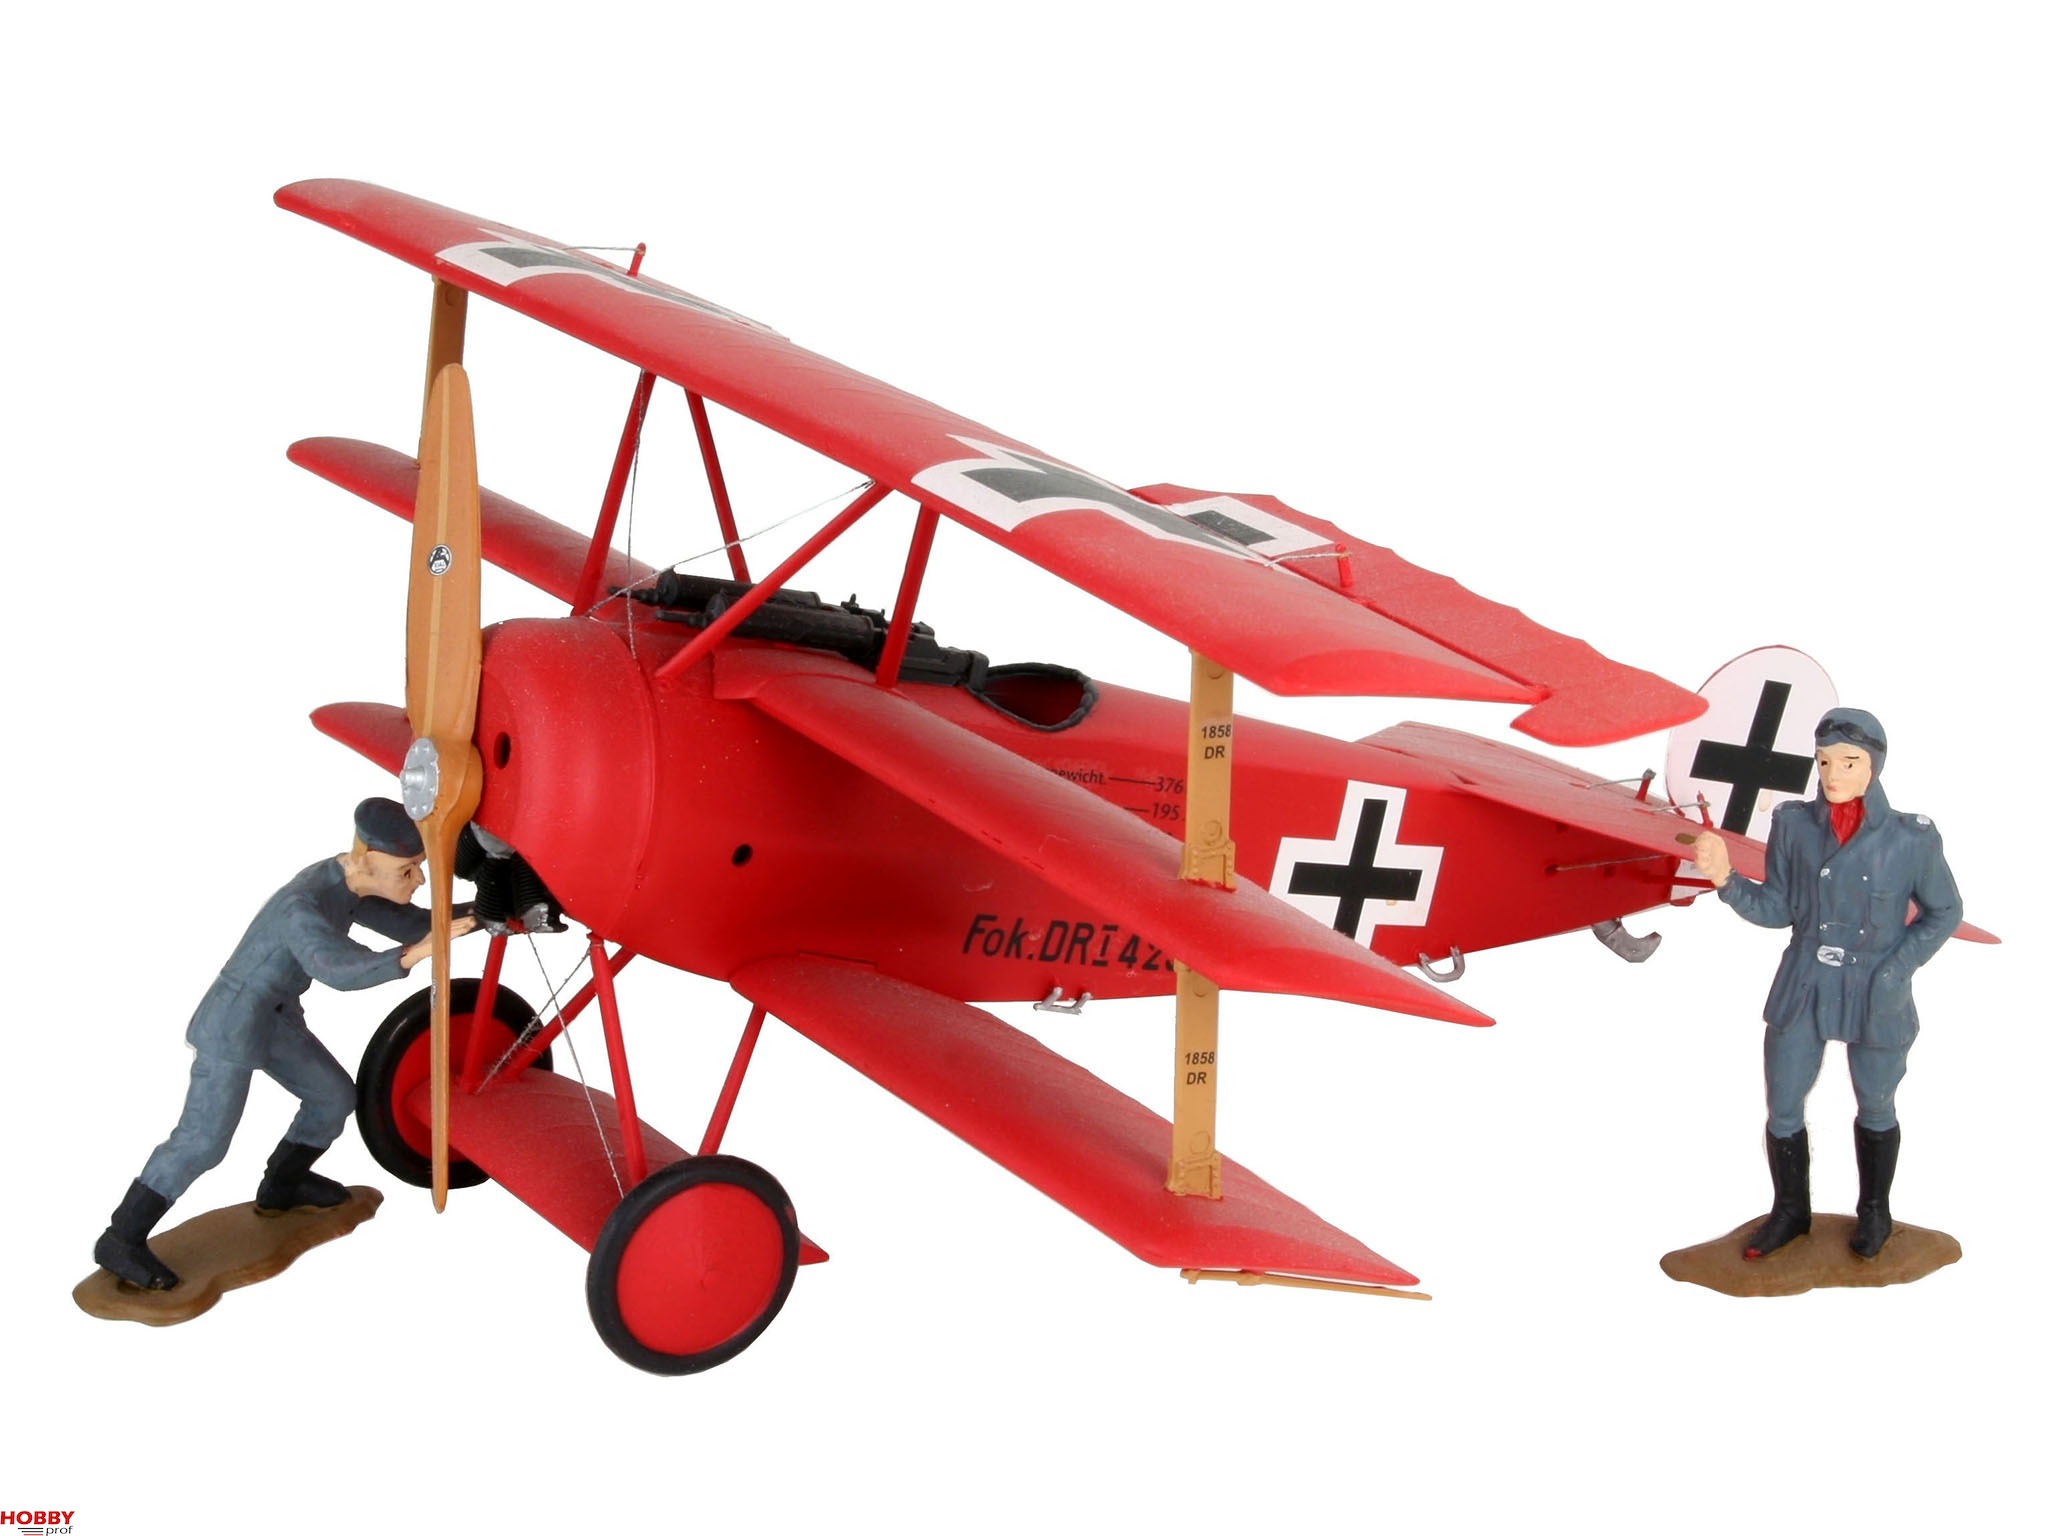 Fokker Dr.I Wallpapers